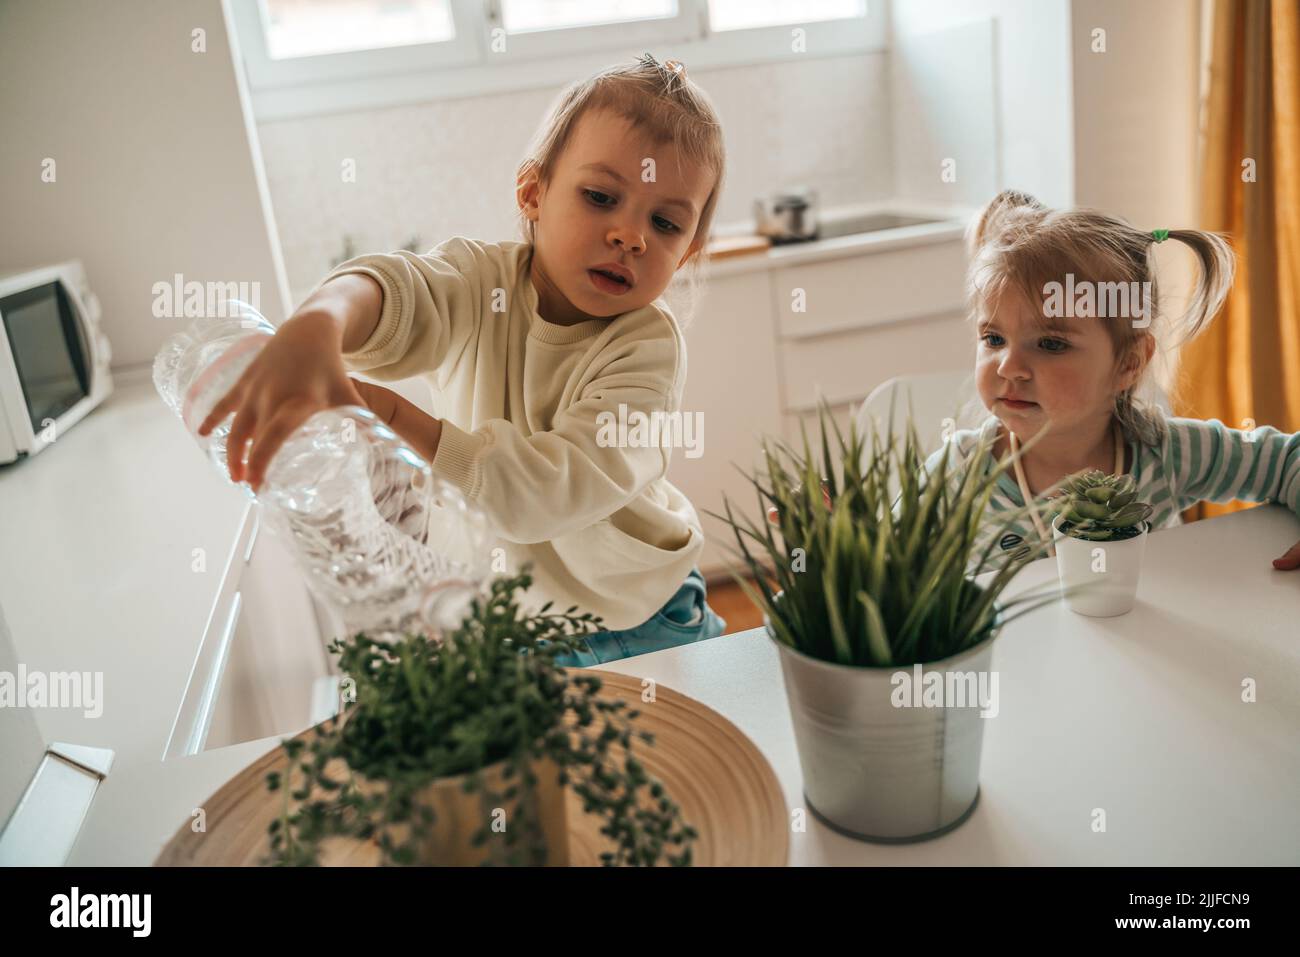 Das kleine Mädchen beobachtet ihren Bruder, der die Topfpflanze wässert Stockfoto